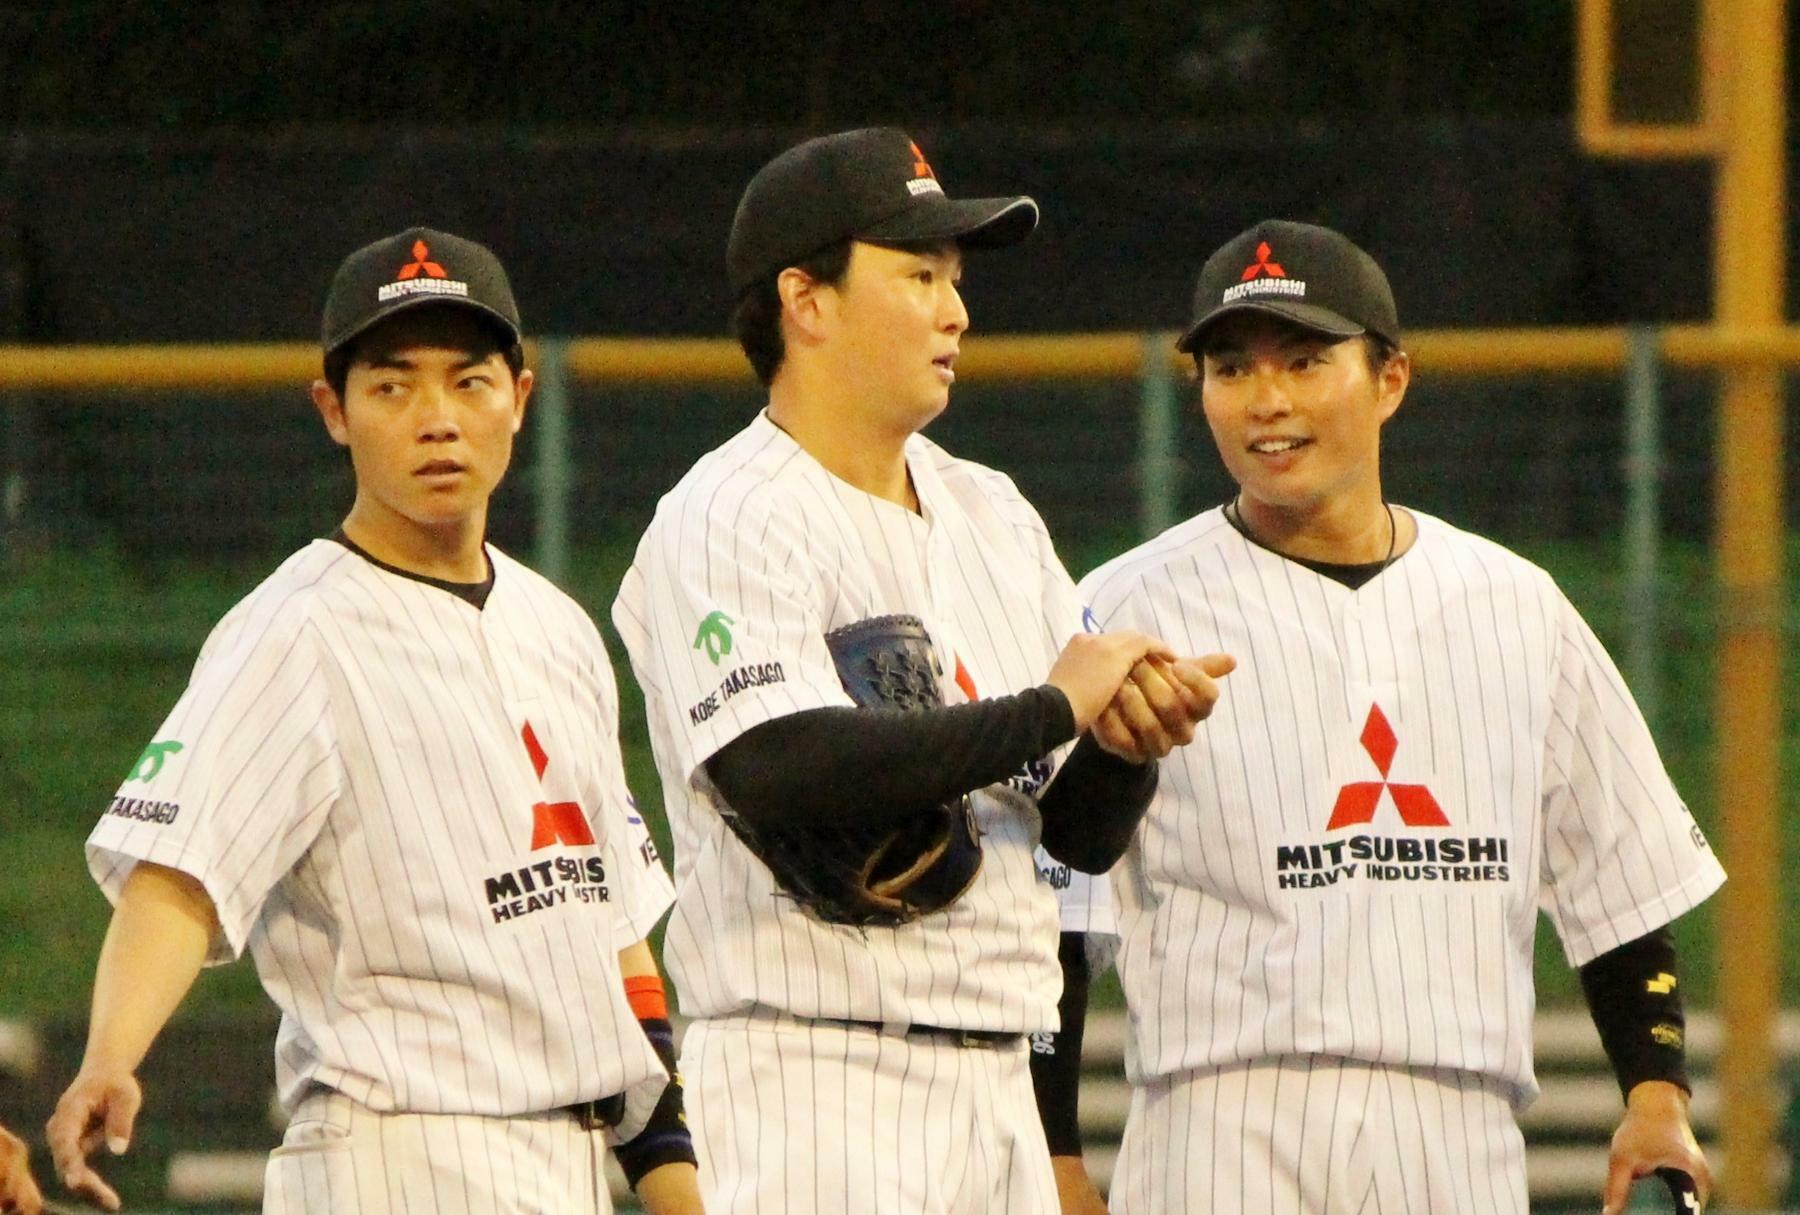 マウンドの竹田投手(中央)のもとへ行き、笑顔で声をかける北條選手(右)。左はショートの朝日選手です。